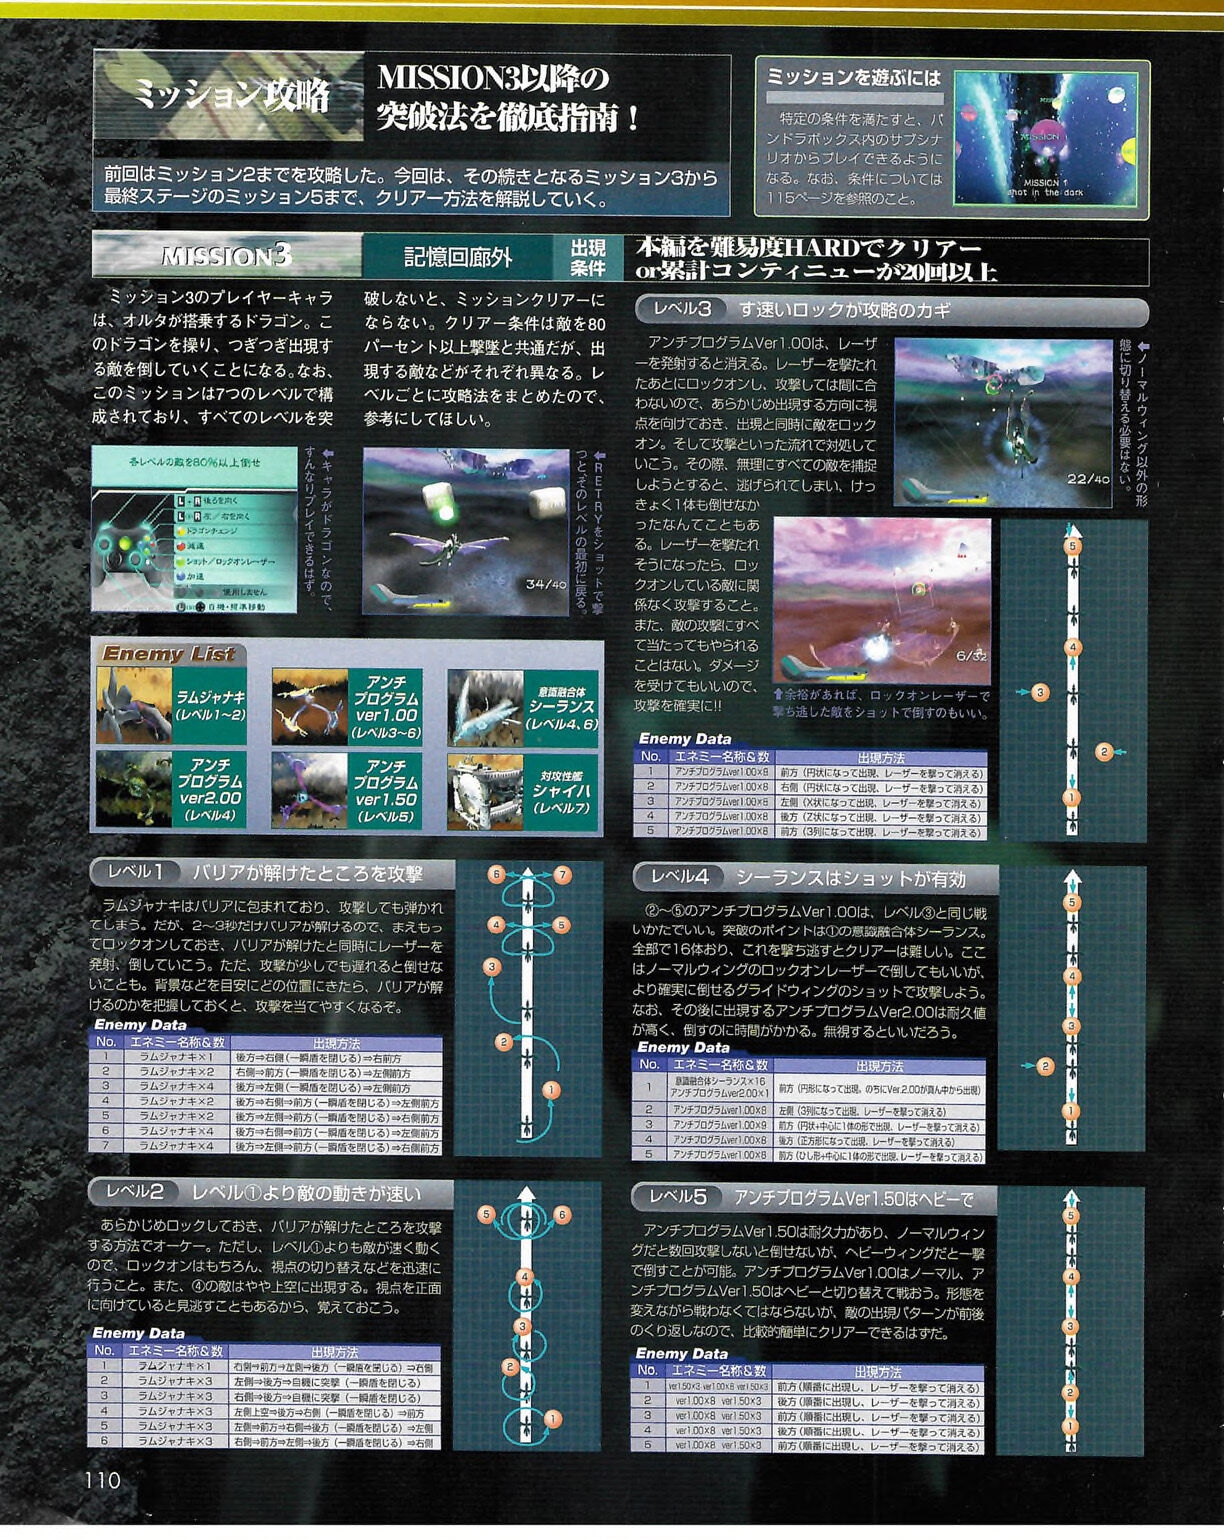 Famitsu_Xbox_2003-04_jp2 109